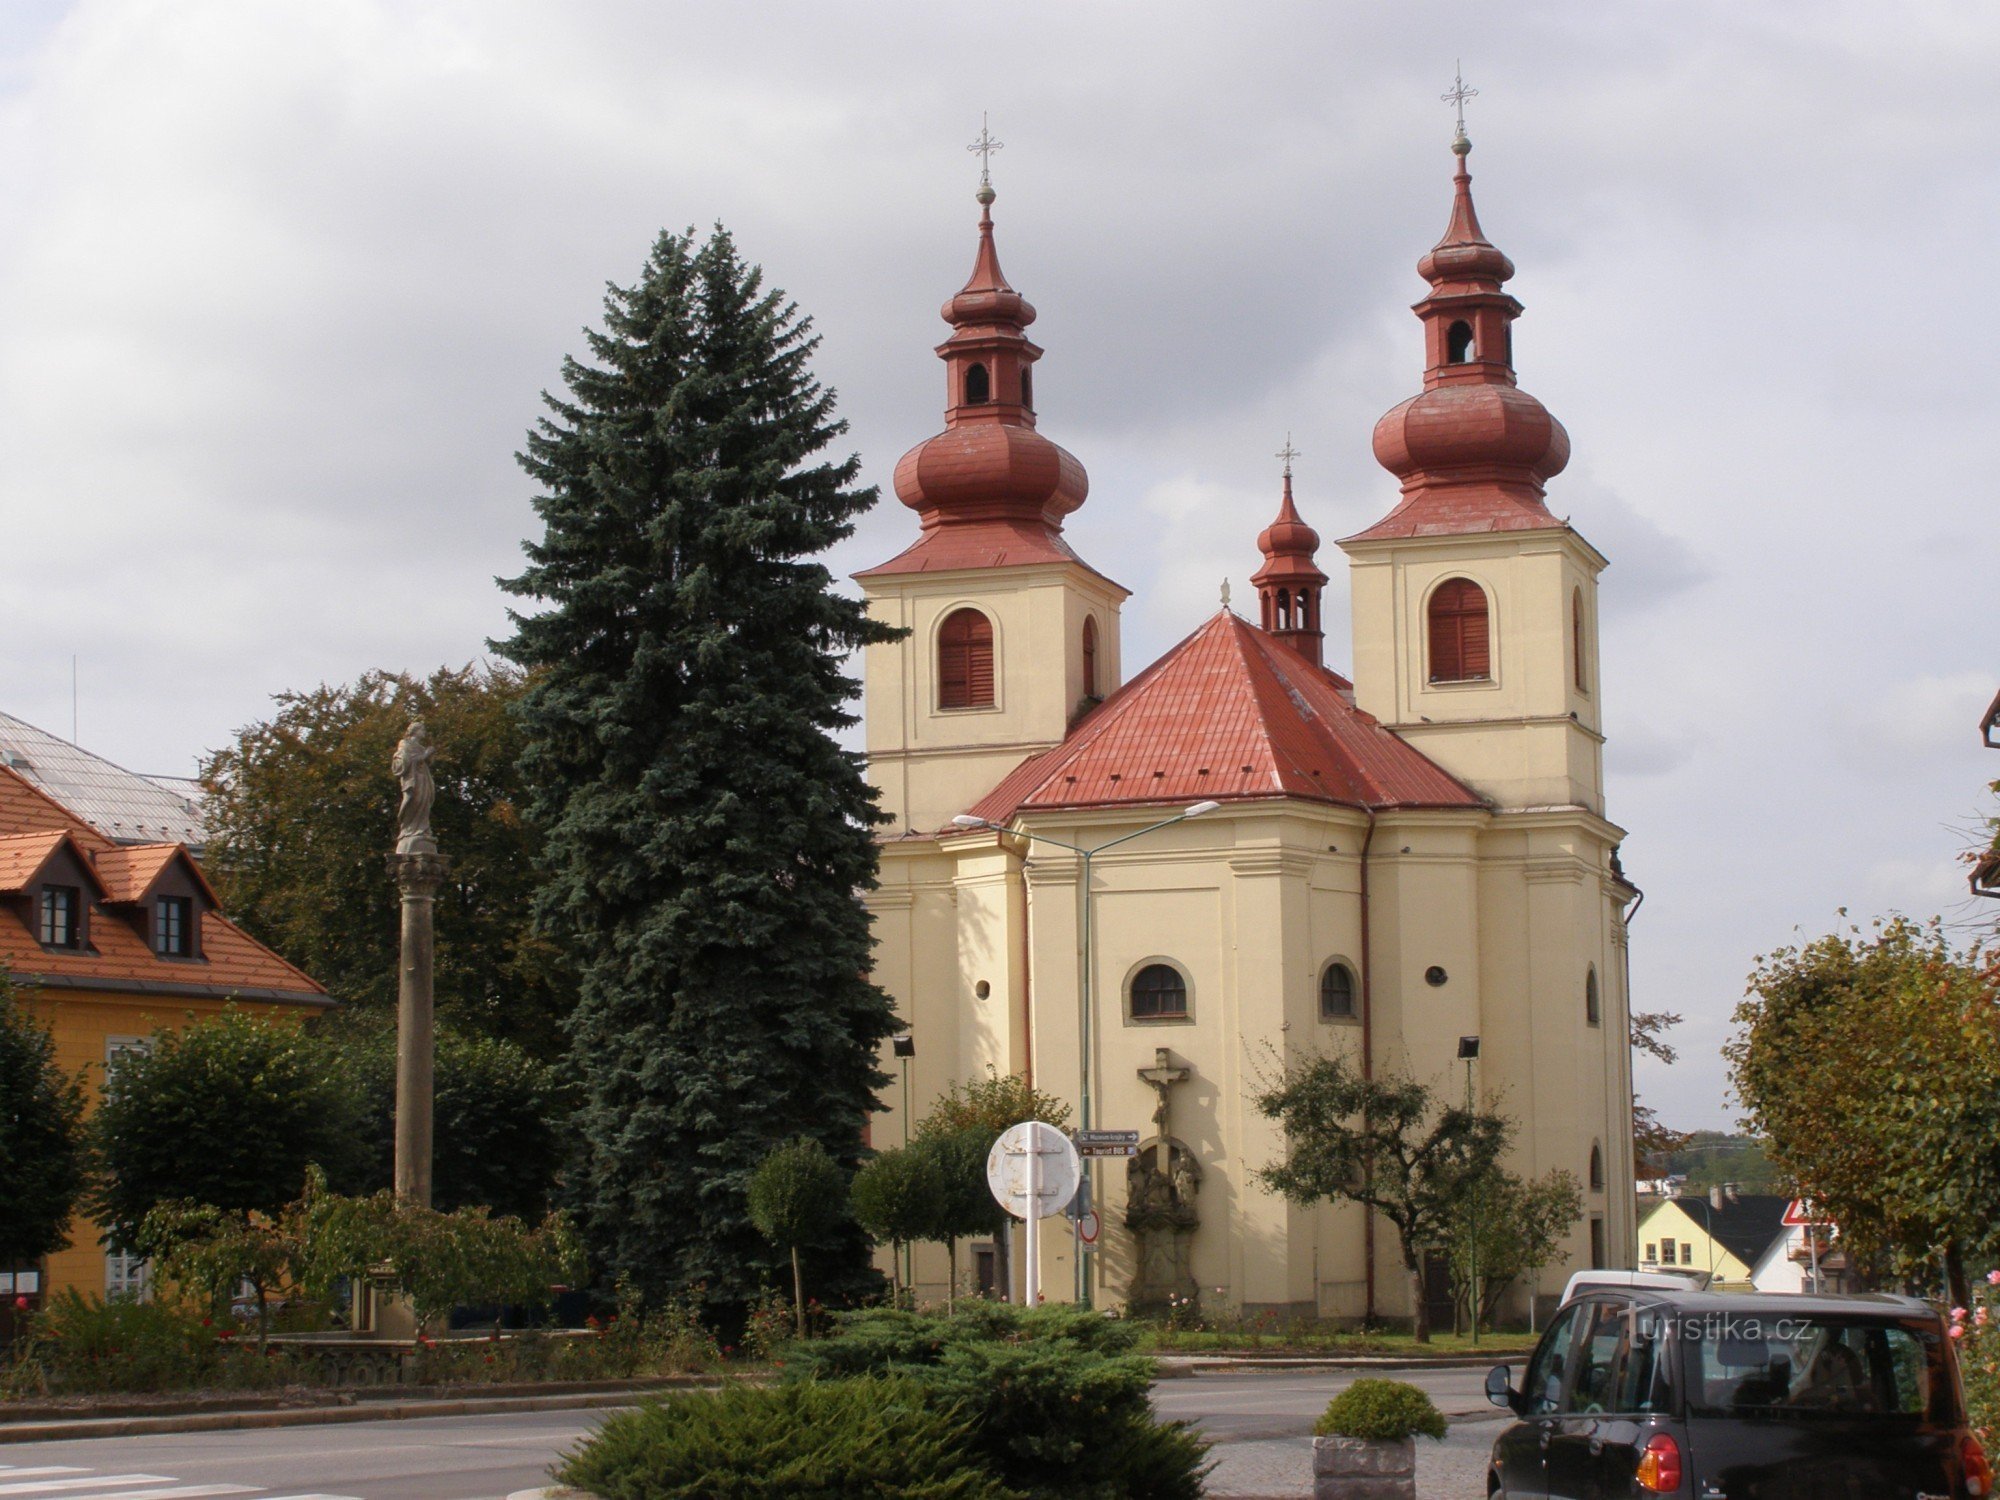 Vamberk - Kerk van St. Procopius